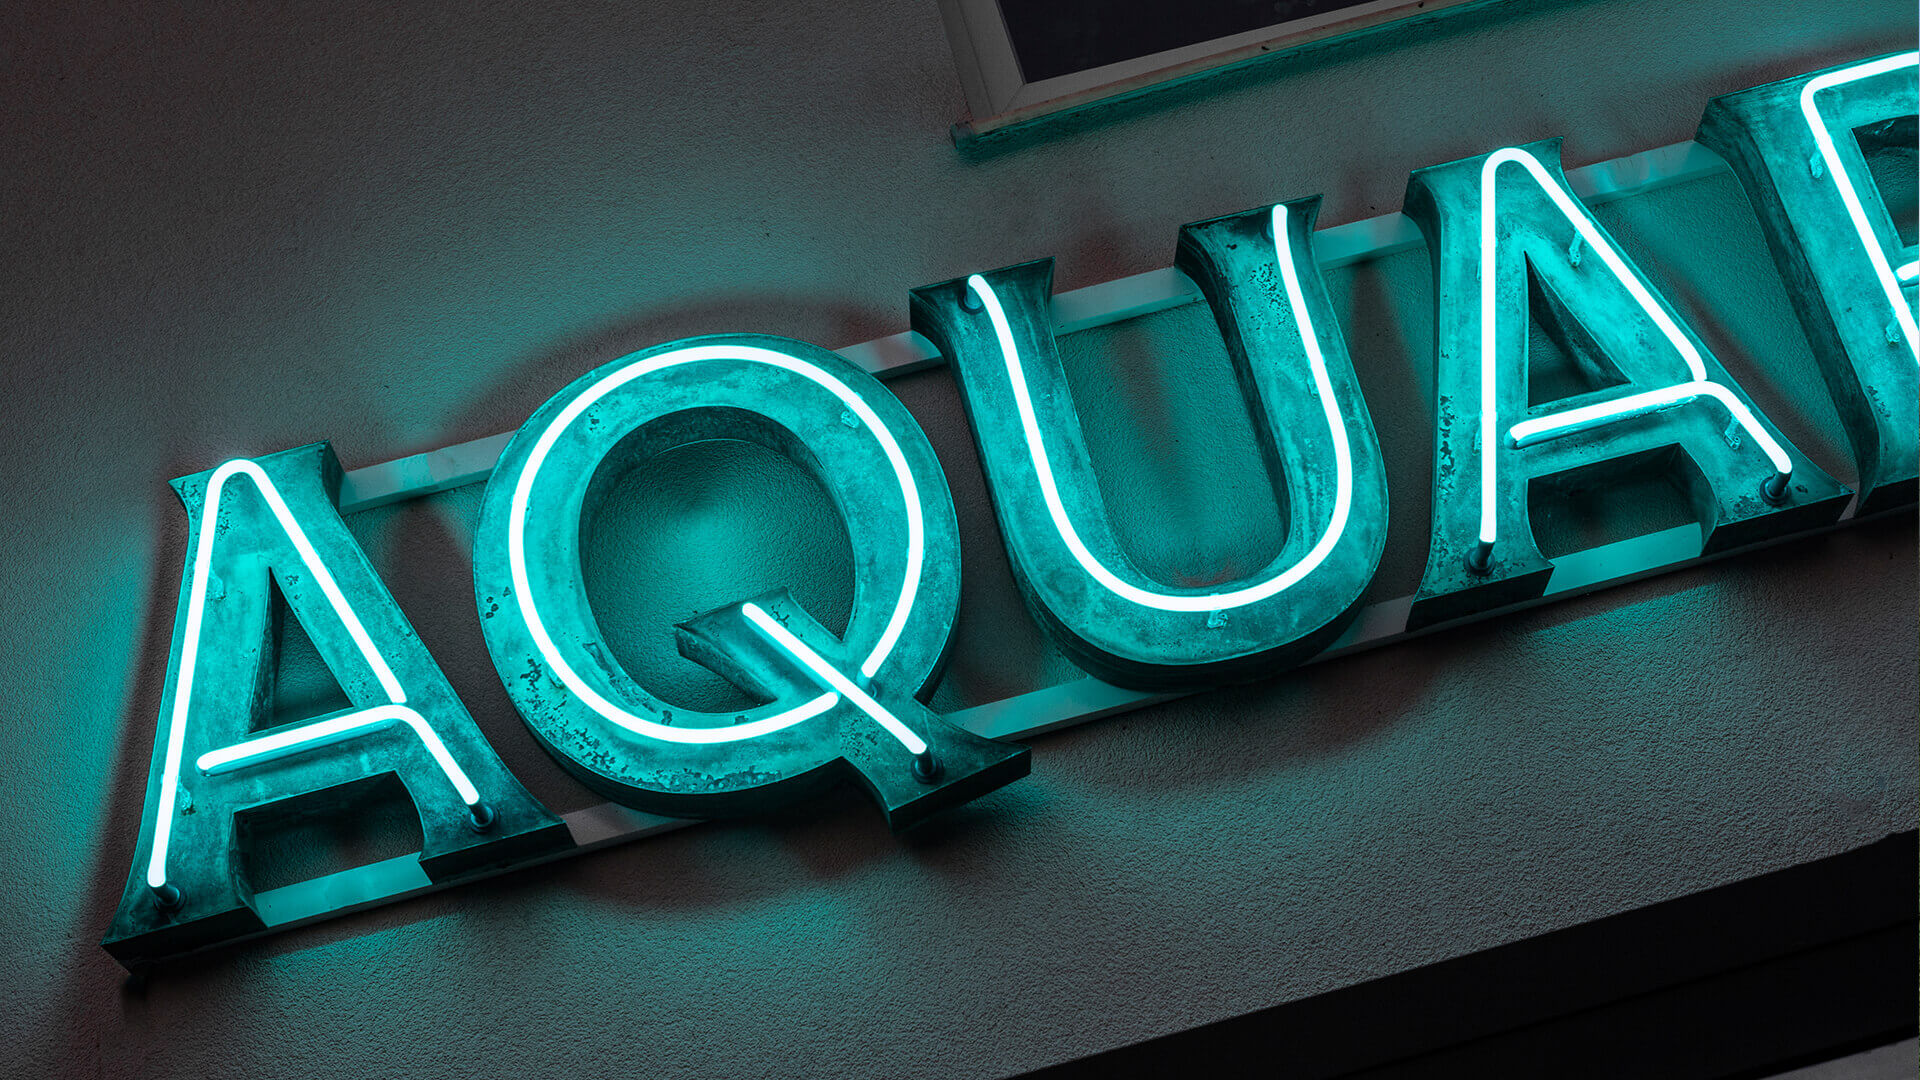 aquarium akwarium - aquarium-neon-na-scianie-budynku-litery-pokryte-patyna-neon-nad-wejsciem-do-restauracji-zielony-neon-na-elewacji-budynkui-neon-na-stelazu-podswietlany-szklo (31).jpg